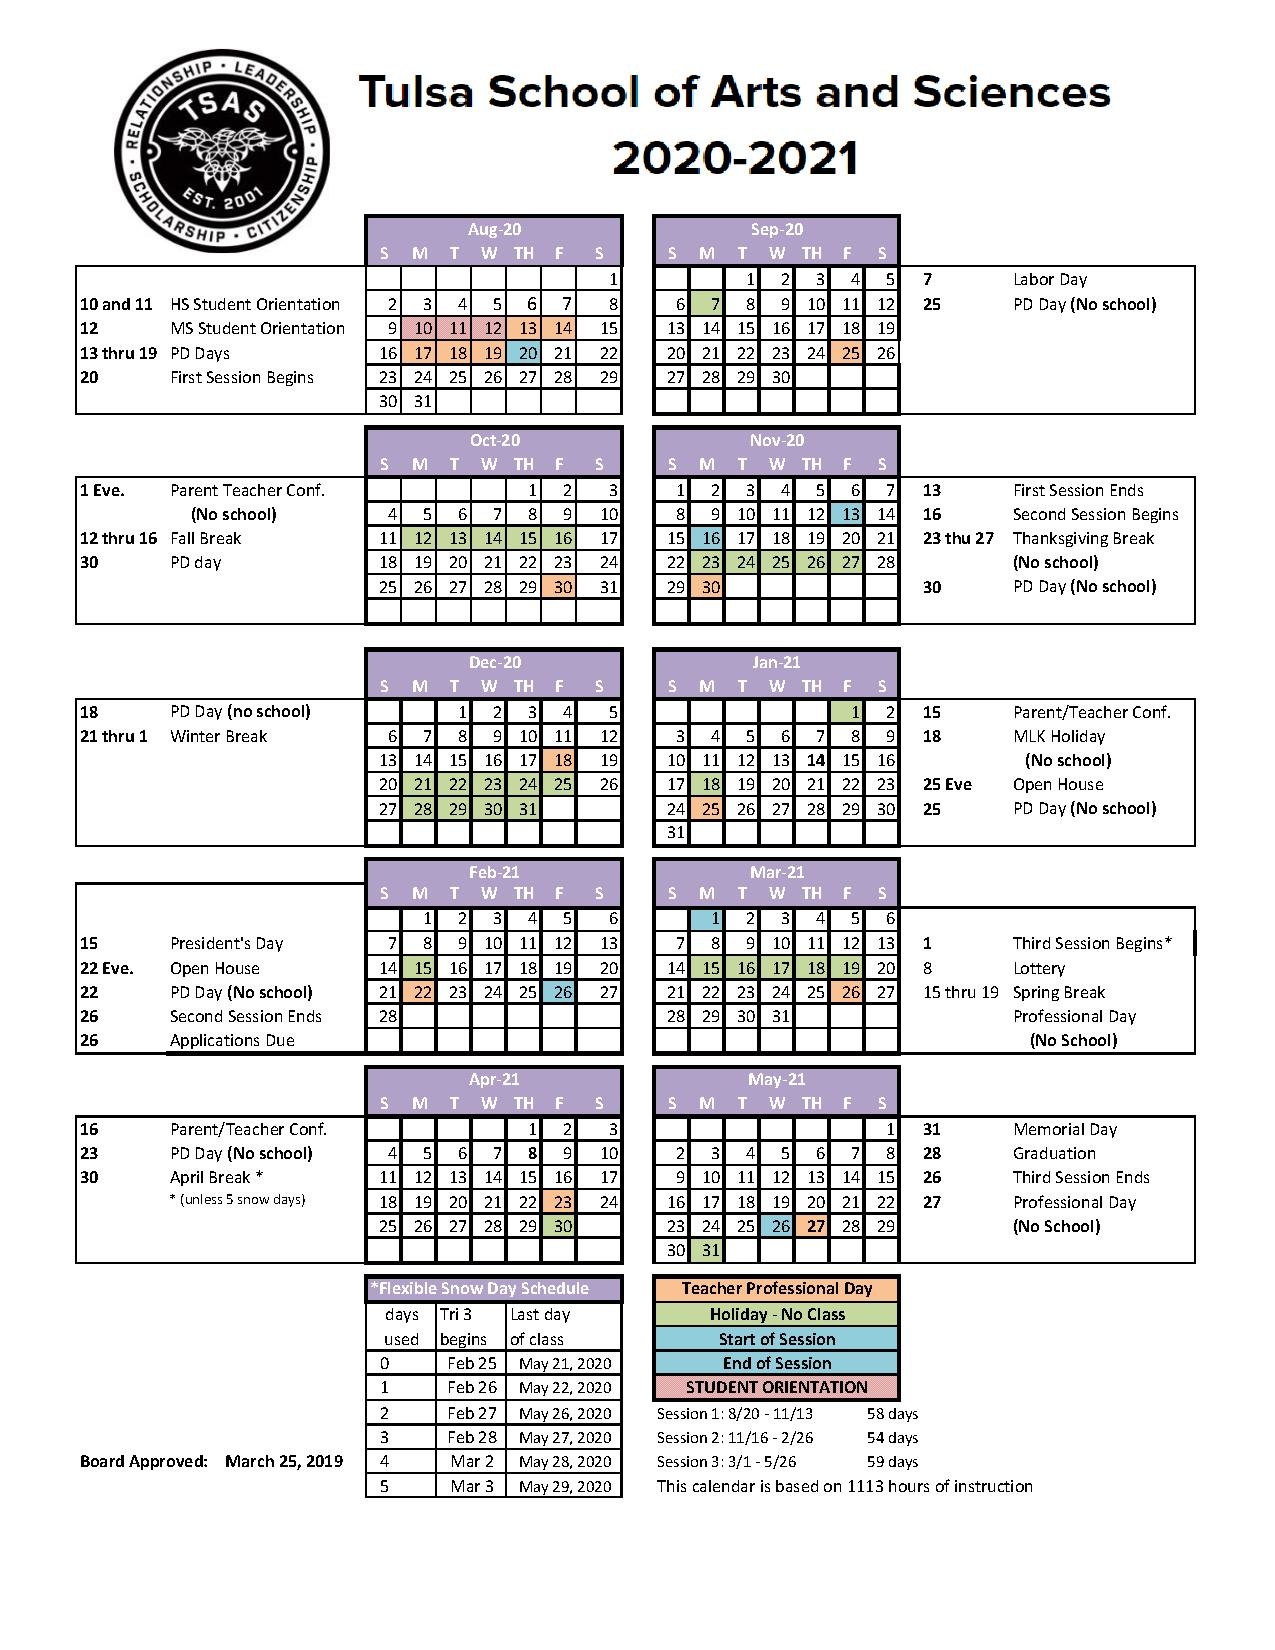 School Year 2020-2021 calendar.pdf